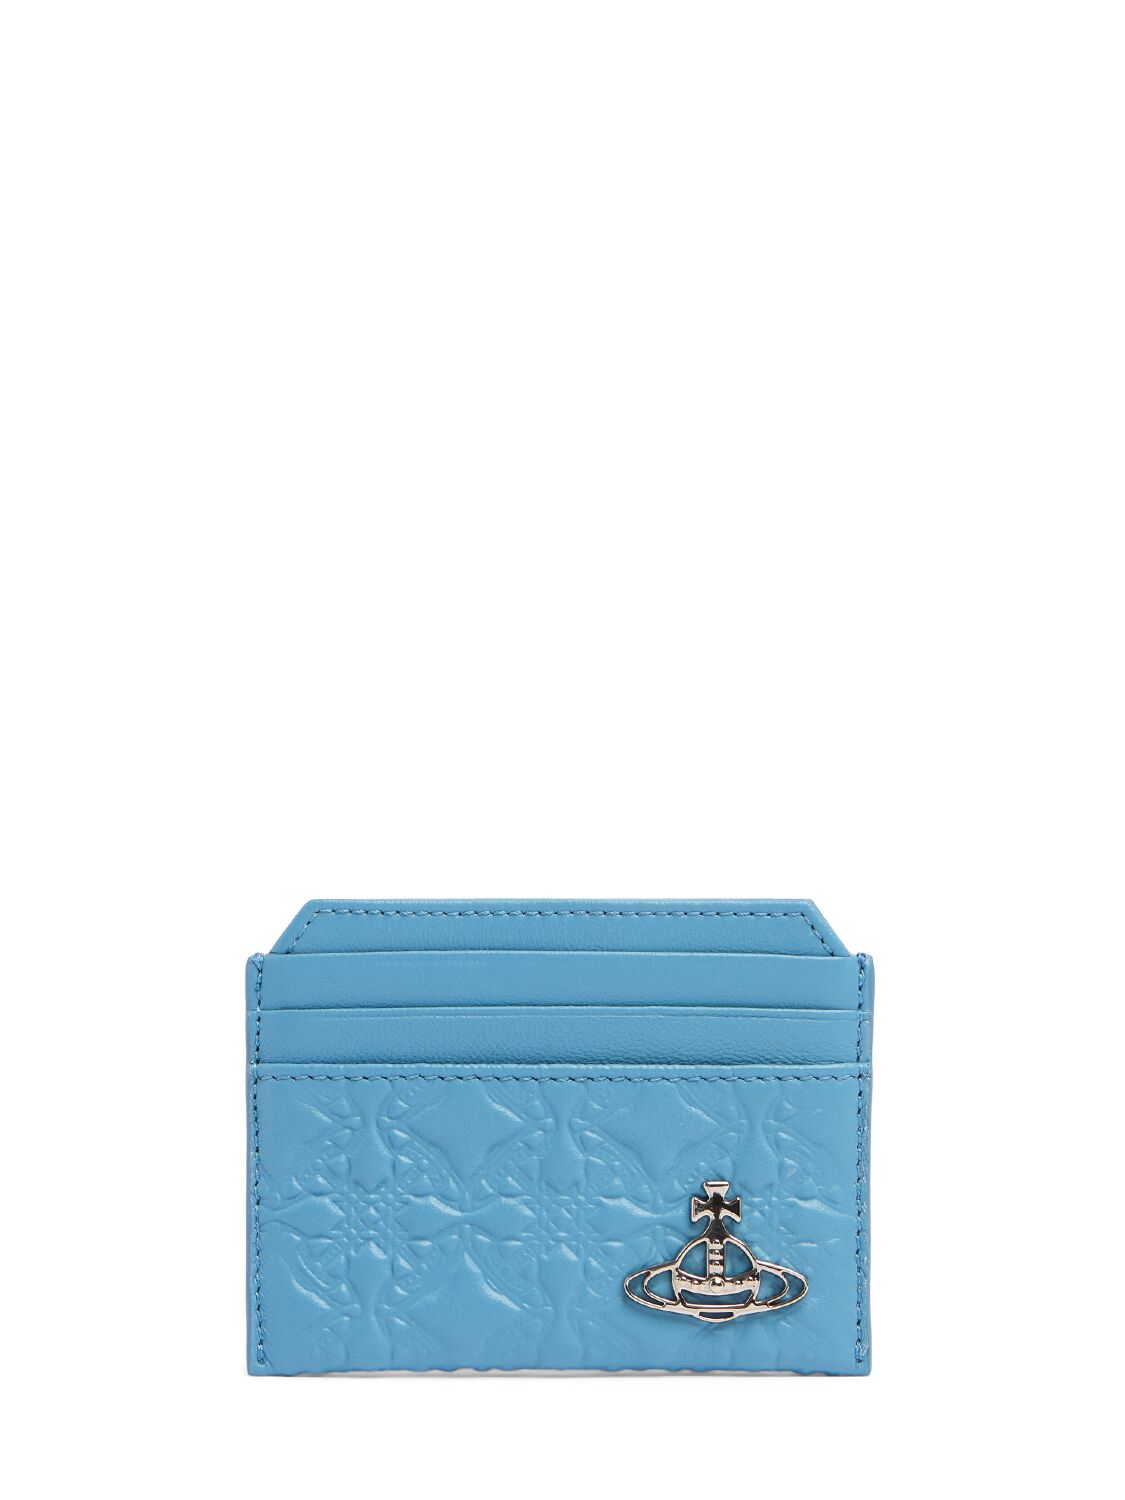 Vivienne Westwood Embossed Leather Slim Card Holder In Blue